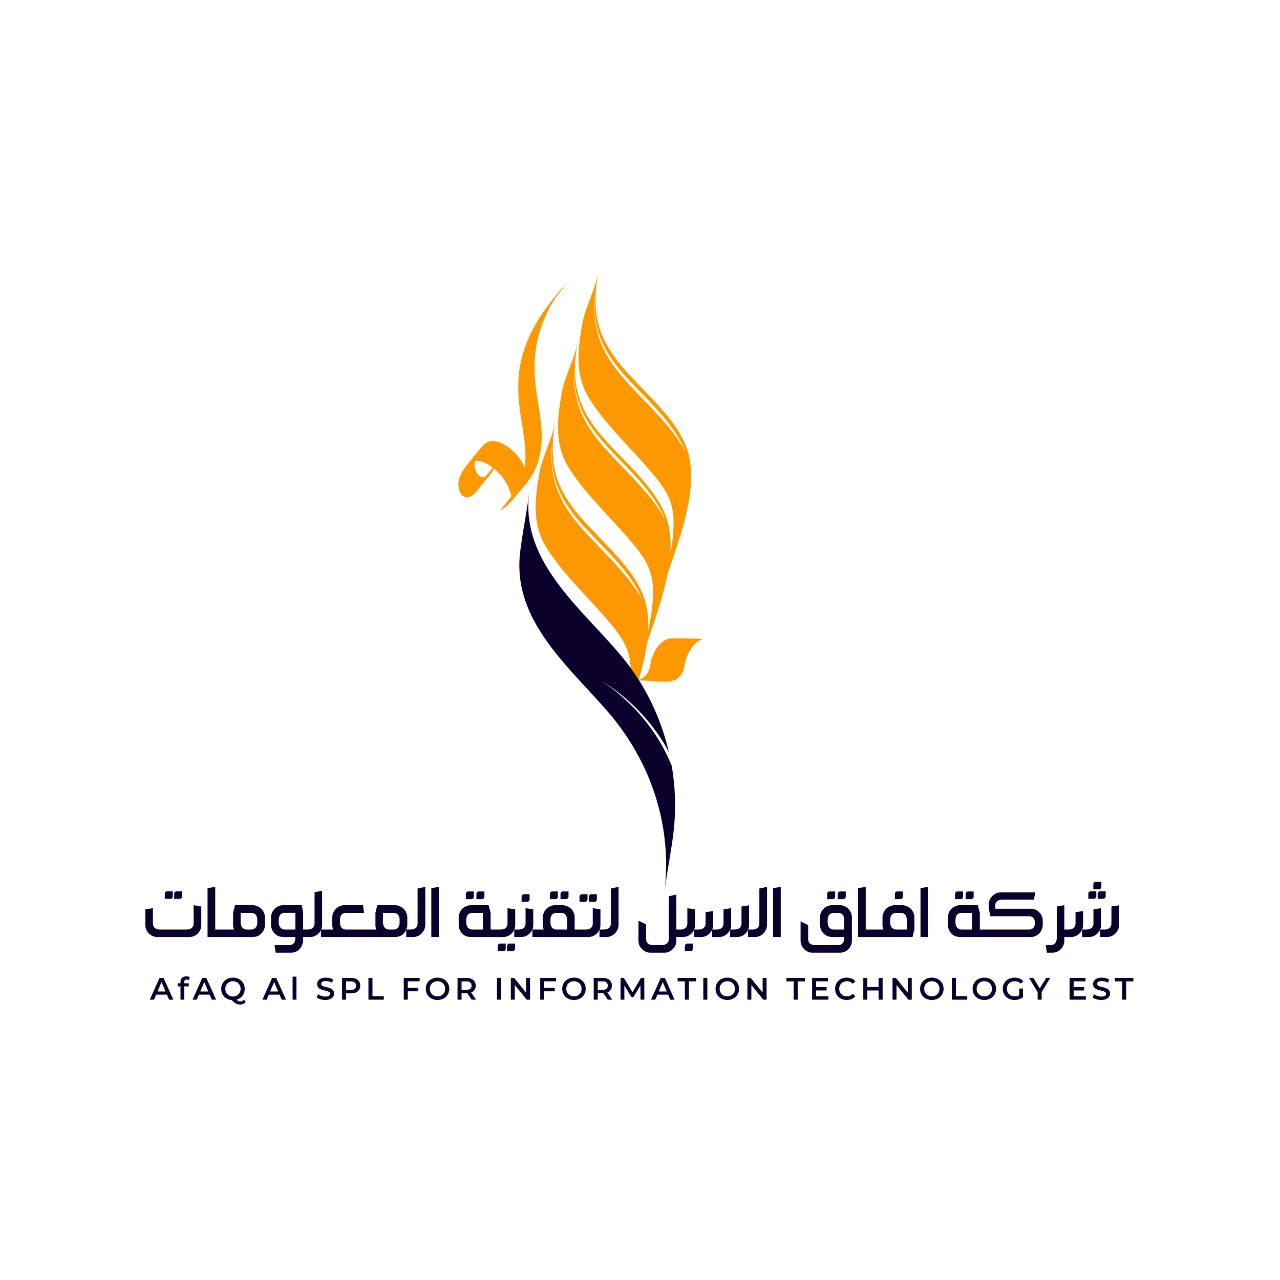 شركة افاق السبل لتقنية المعلومات / AFAQ AL SPL INFORMATION TECHNOLOGY CO